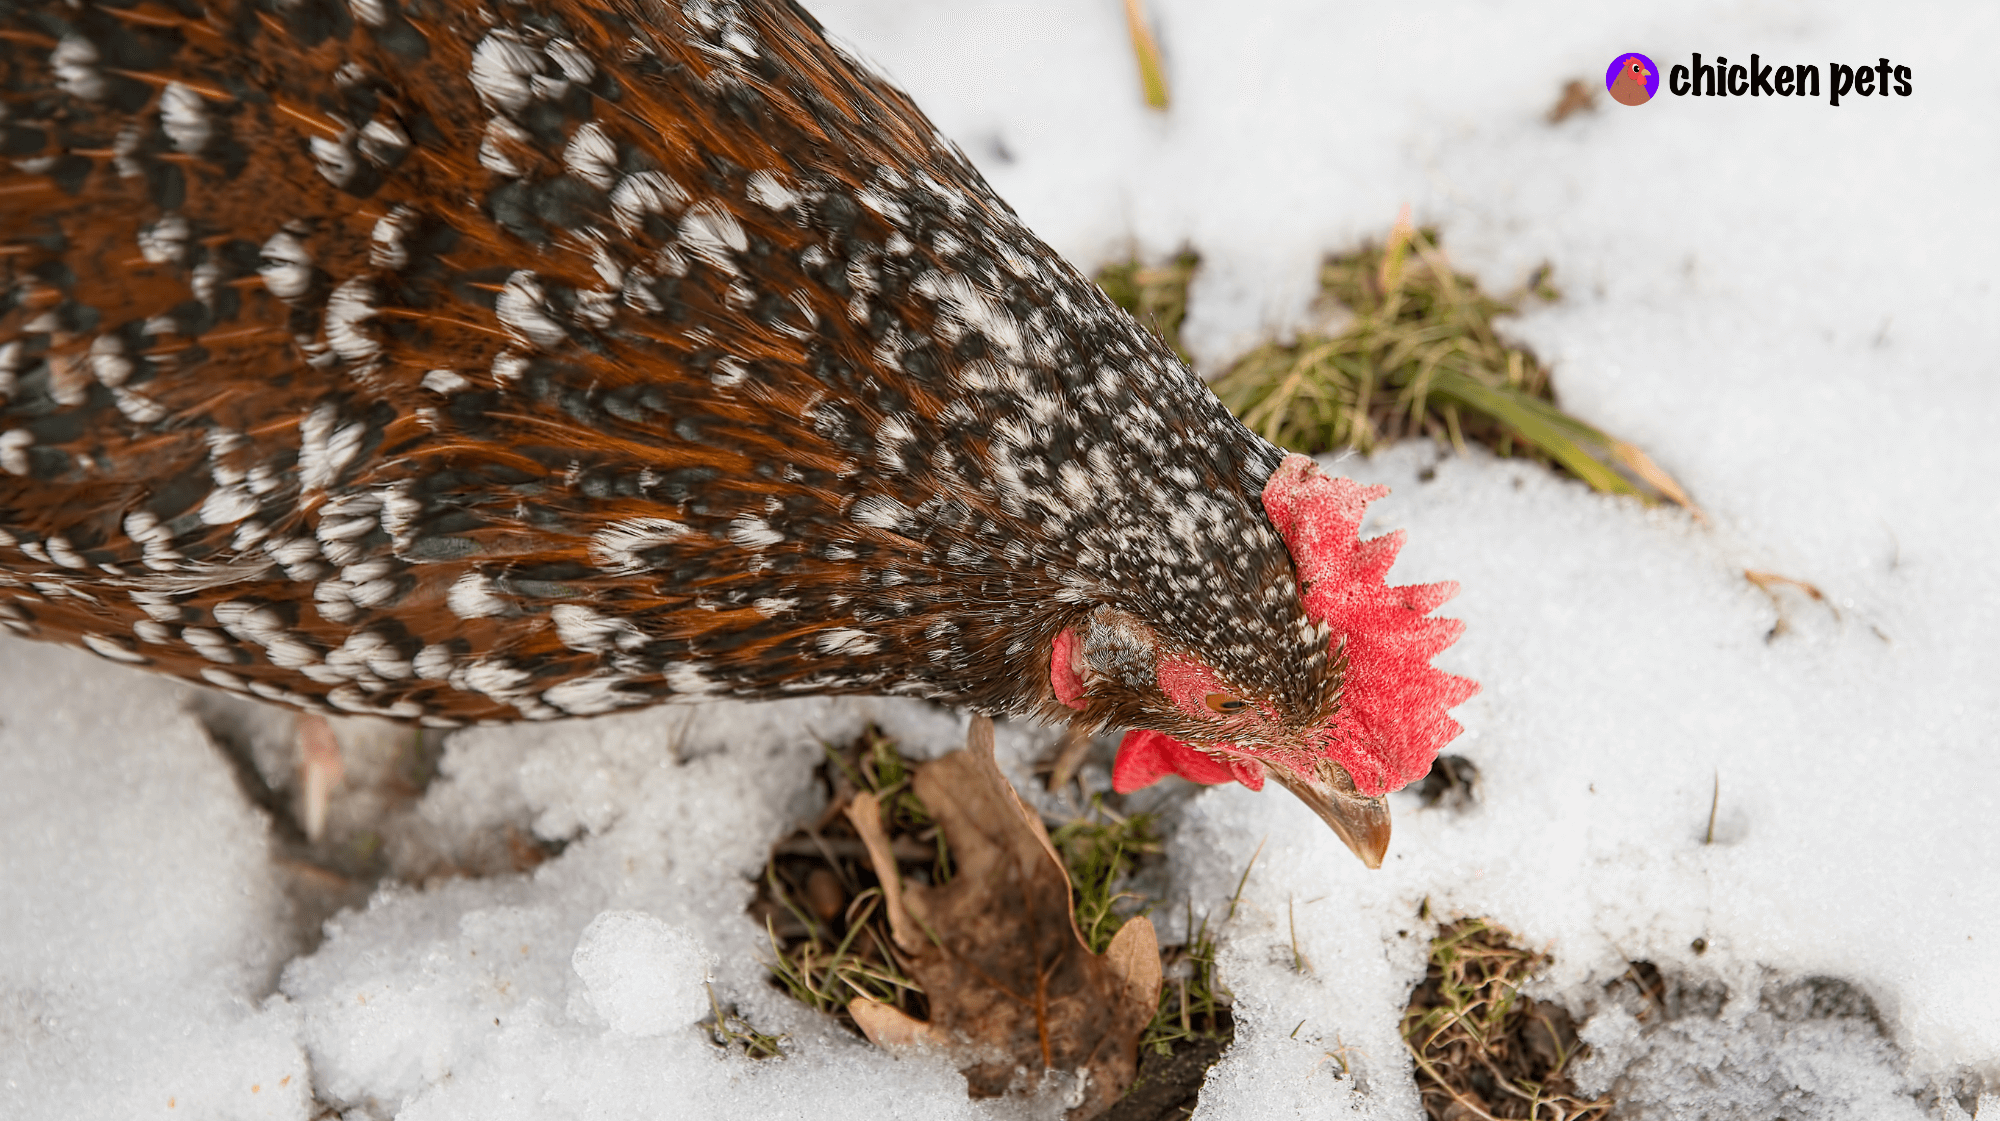 speckled sussex chicken snow